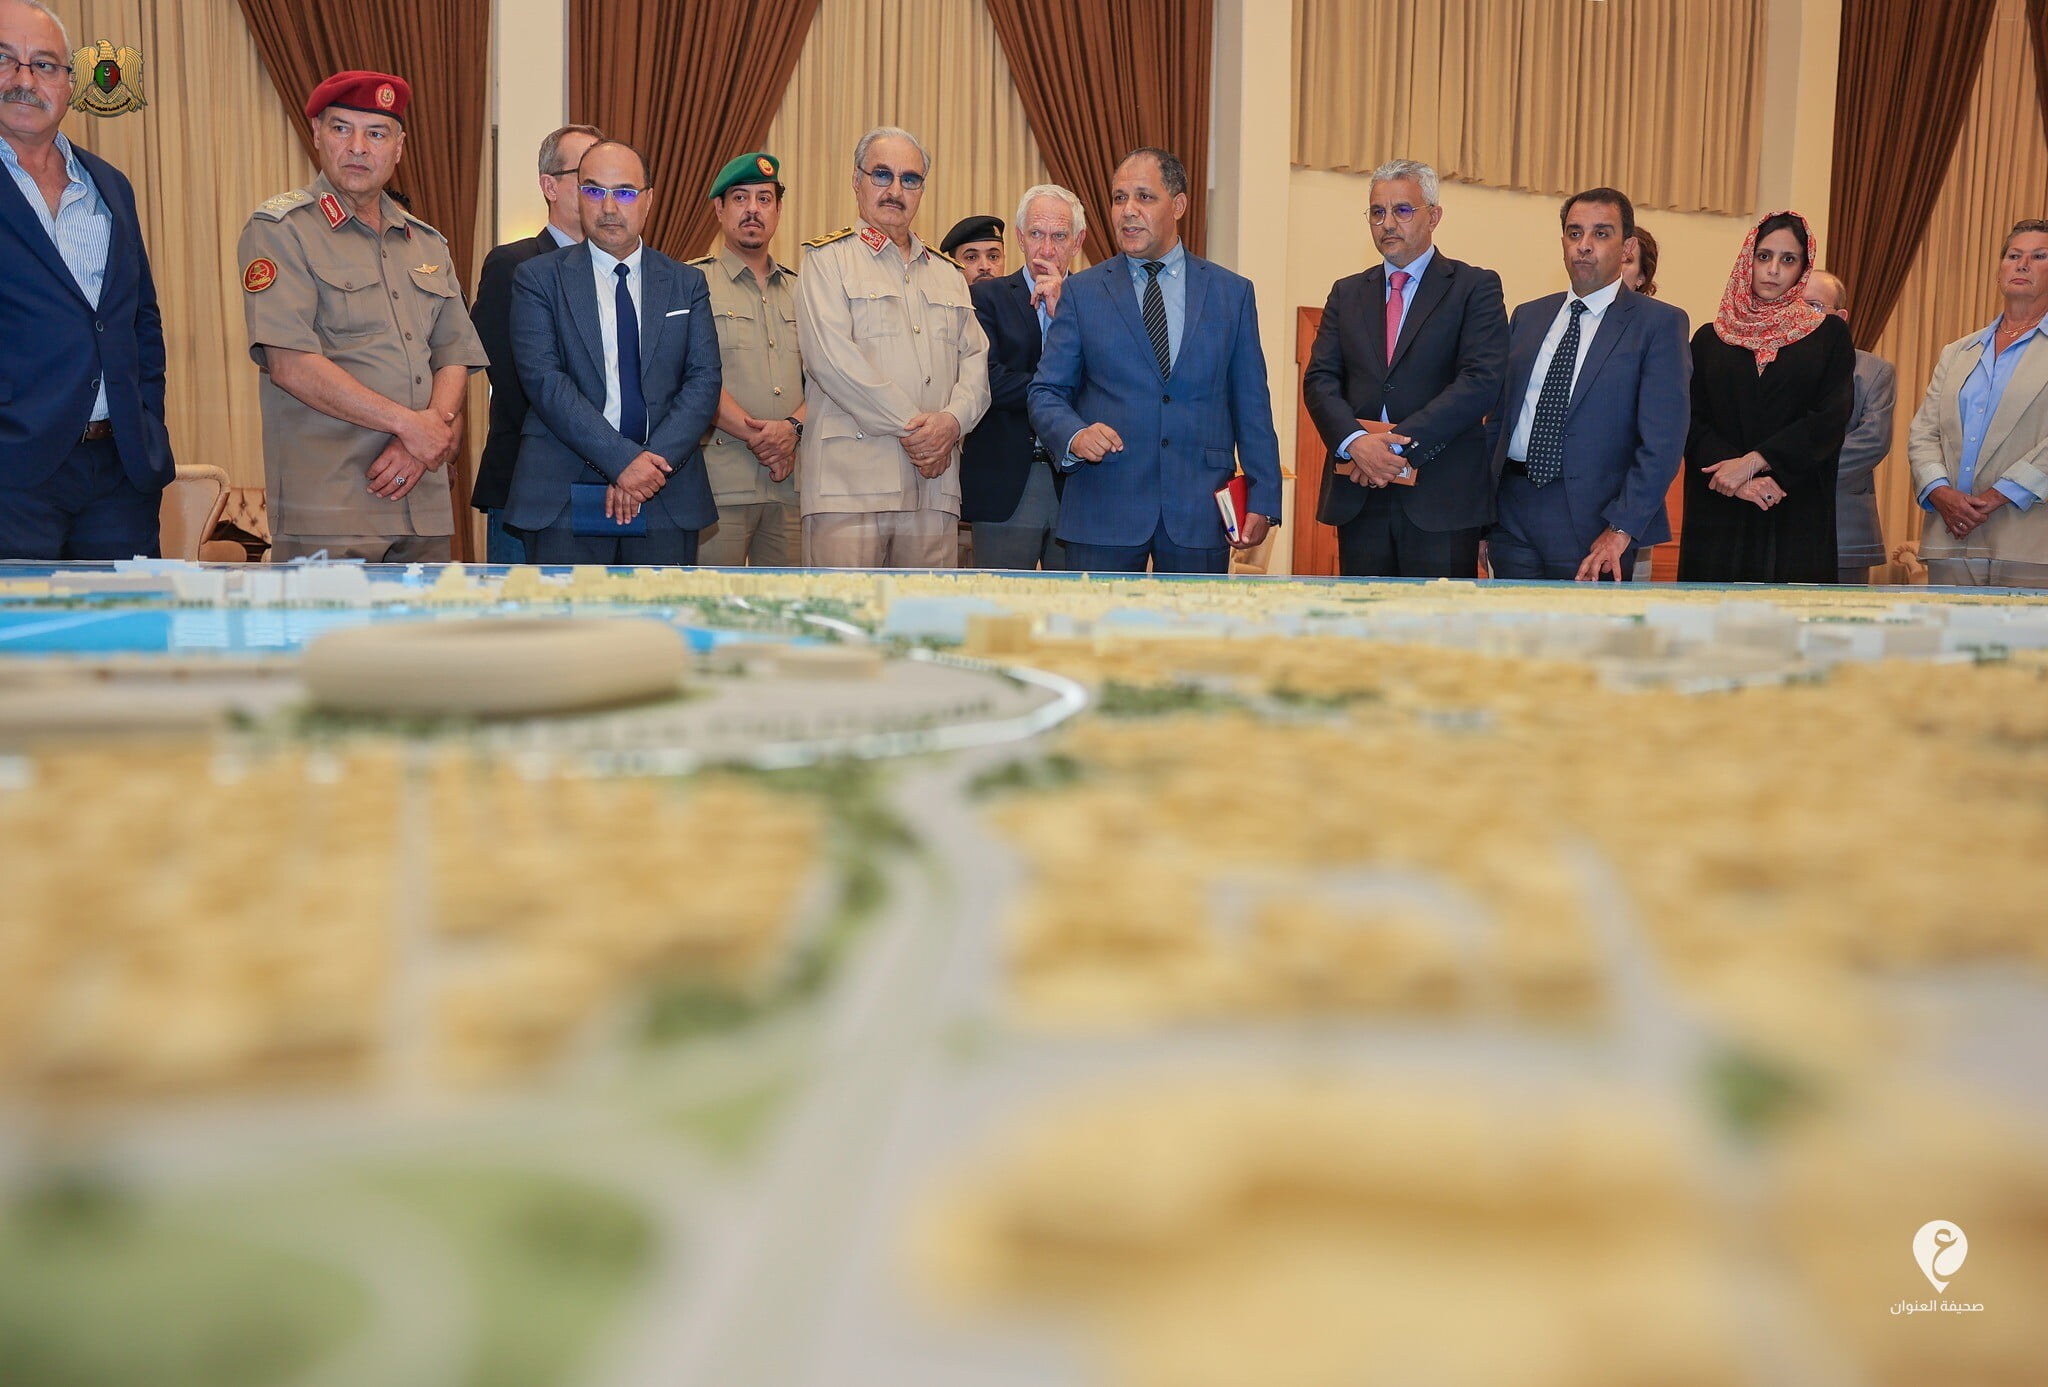 حفتر يؤكد على ضرورة تنفيذ المُخطط الحضاري لمدينة بنغازي وفقاً للشروط الهندسية والفنية - 355161182 590365463276083 6644409923553303930 n